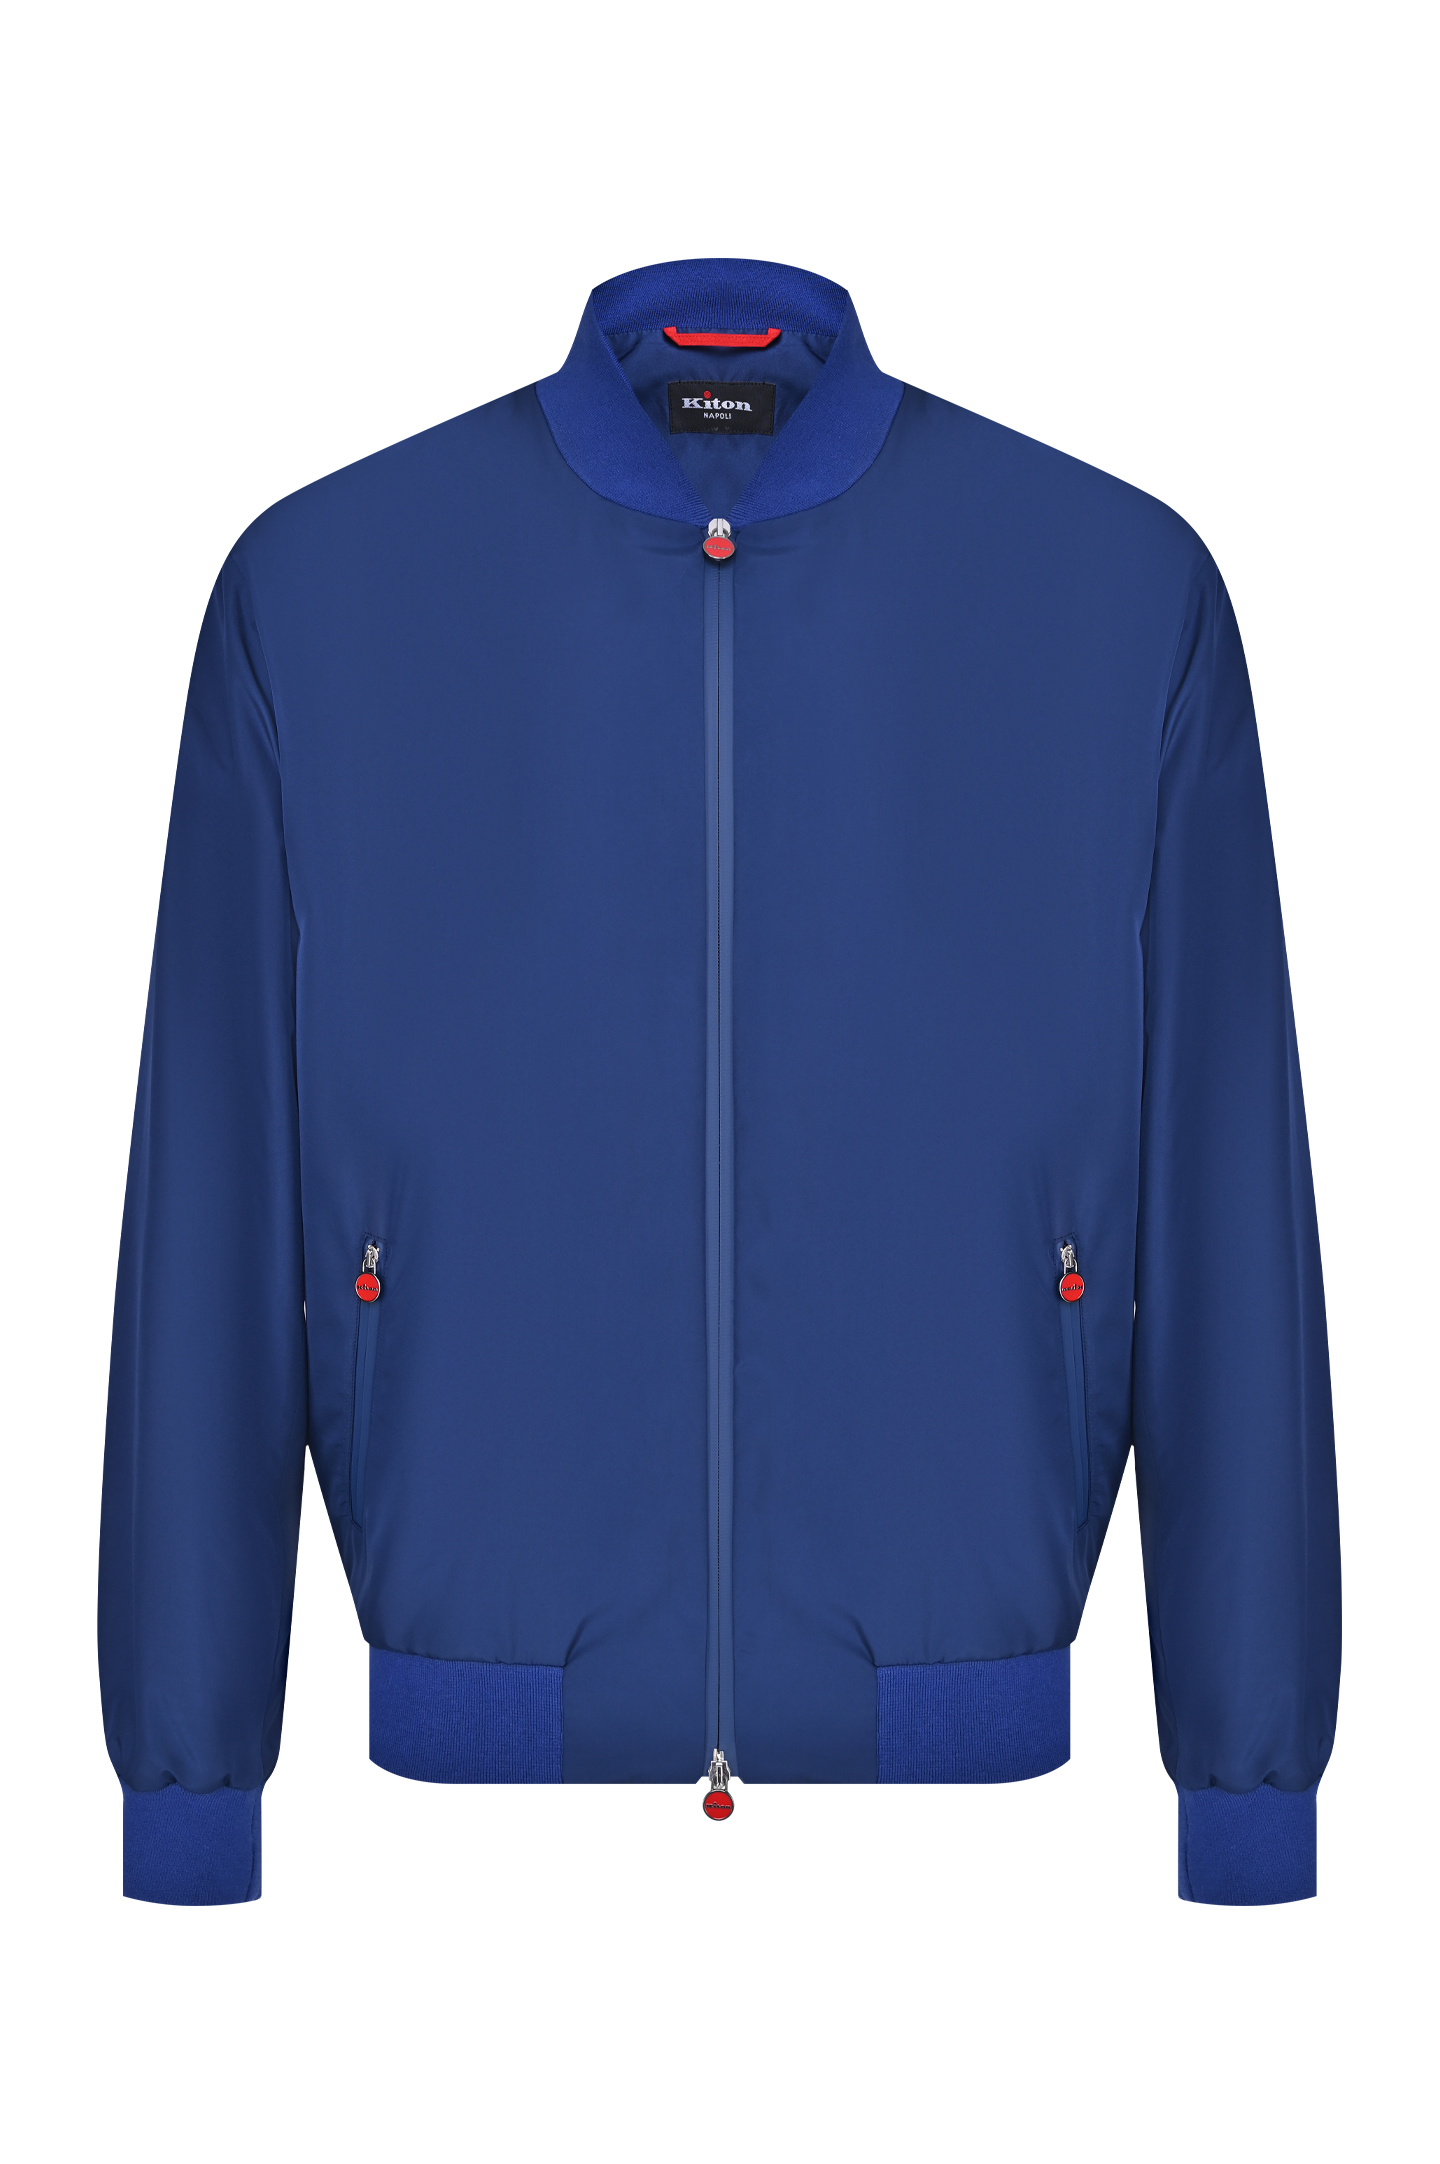 Куртка KITON UBLMSEAXB60092, цвет: Синий, Мужской